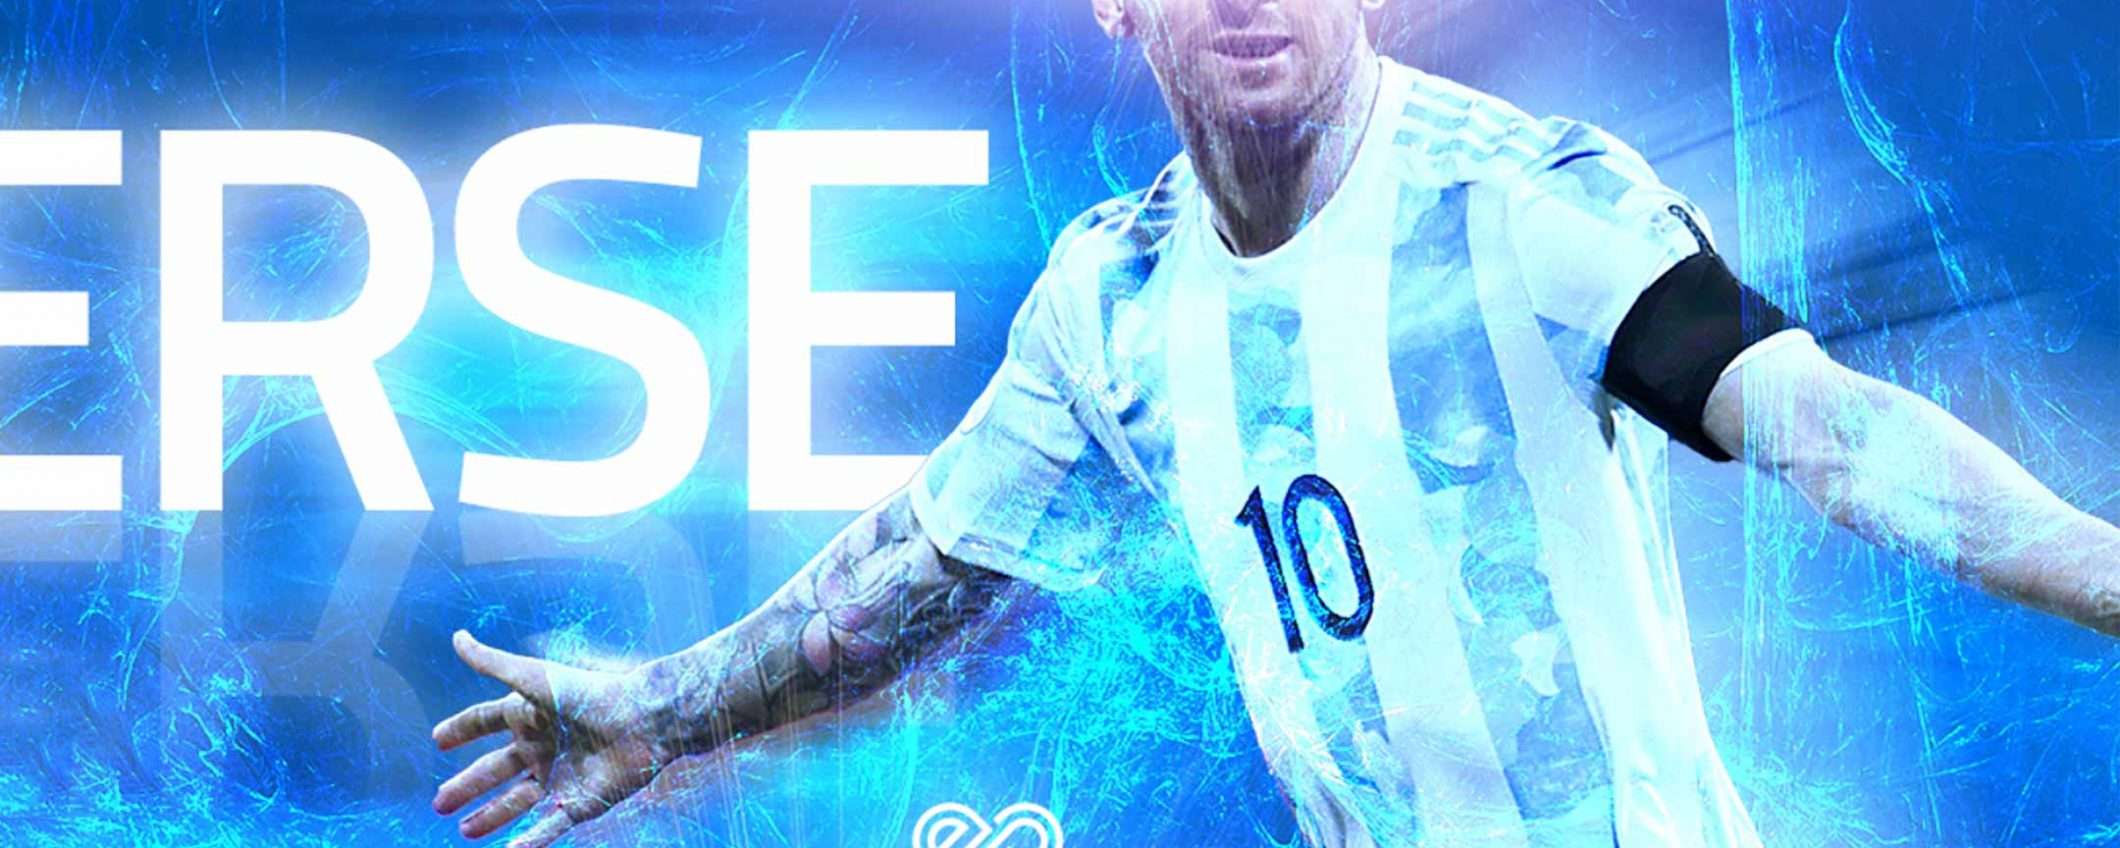 The Messiverse: in arrivo gli NFT di Leo Messi